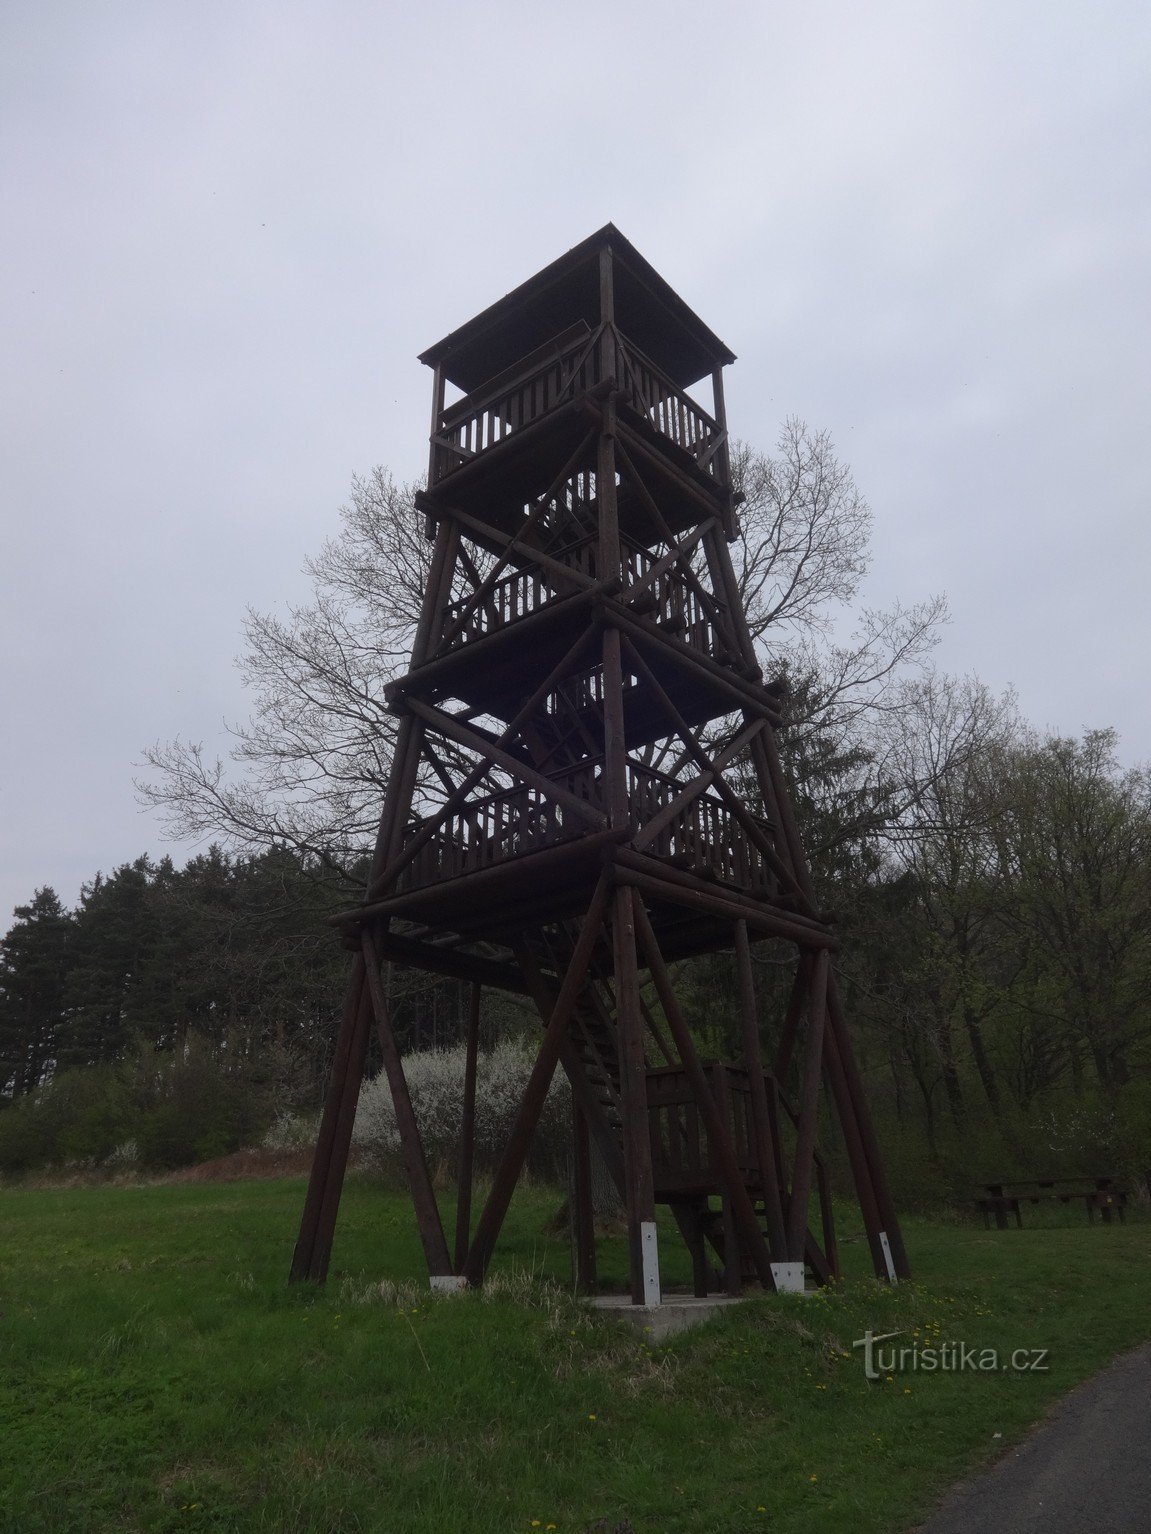 Оглядова вежа Pod Vojanská поблизу Bystřice pod Lopeníek